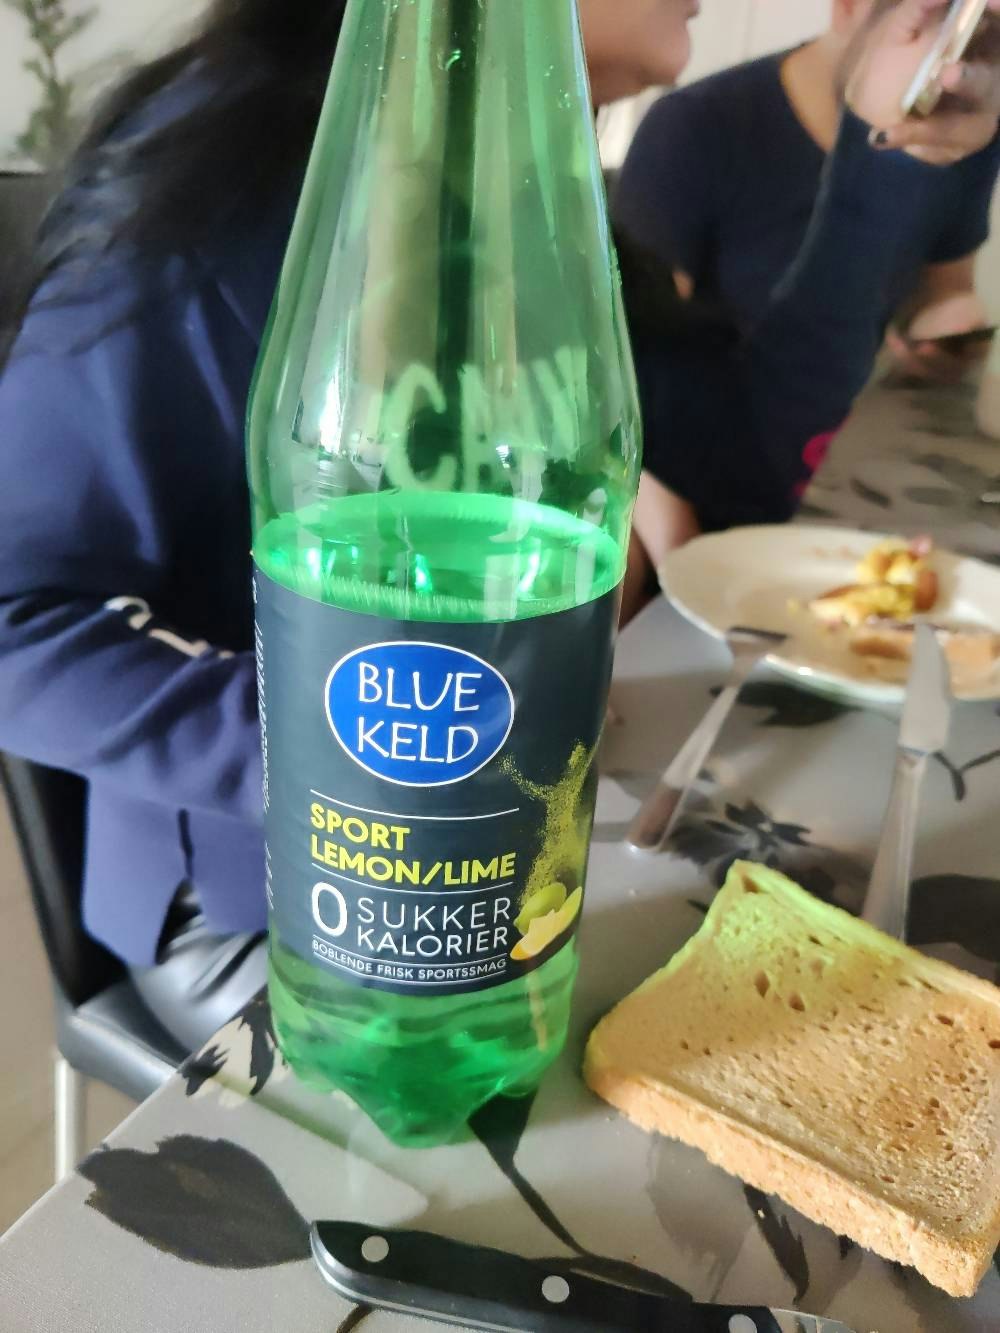 Blue Keld sport lemon/lime, Blue keld Noba